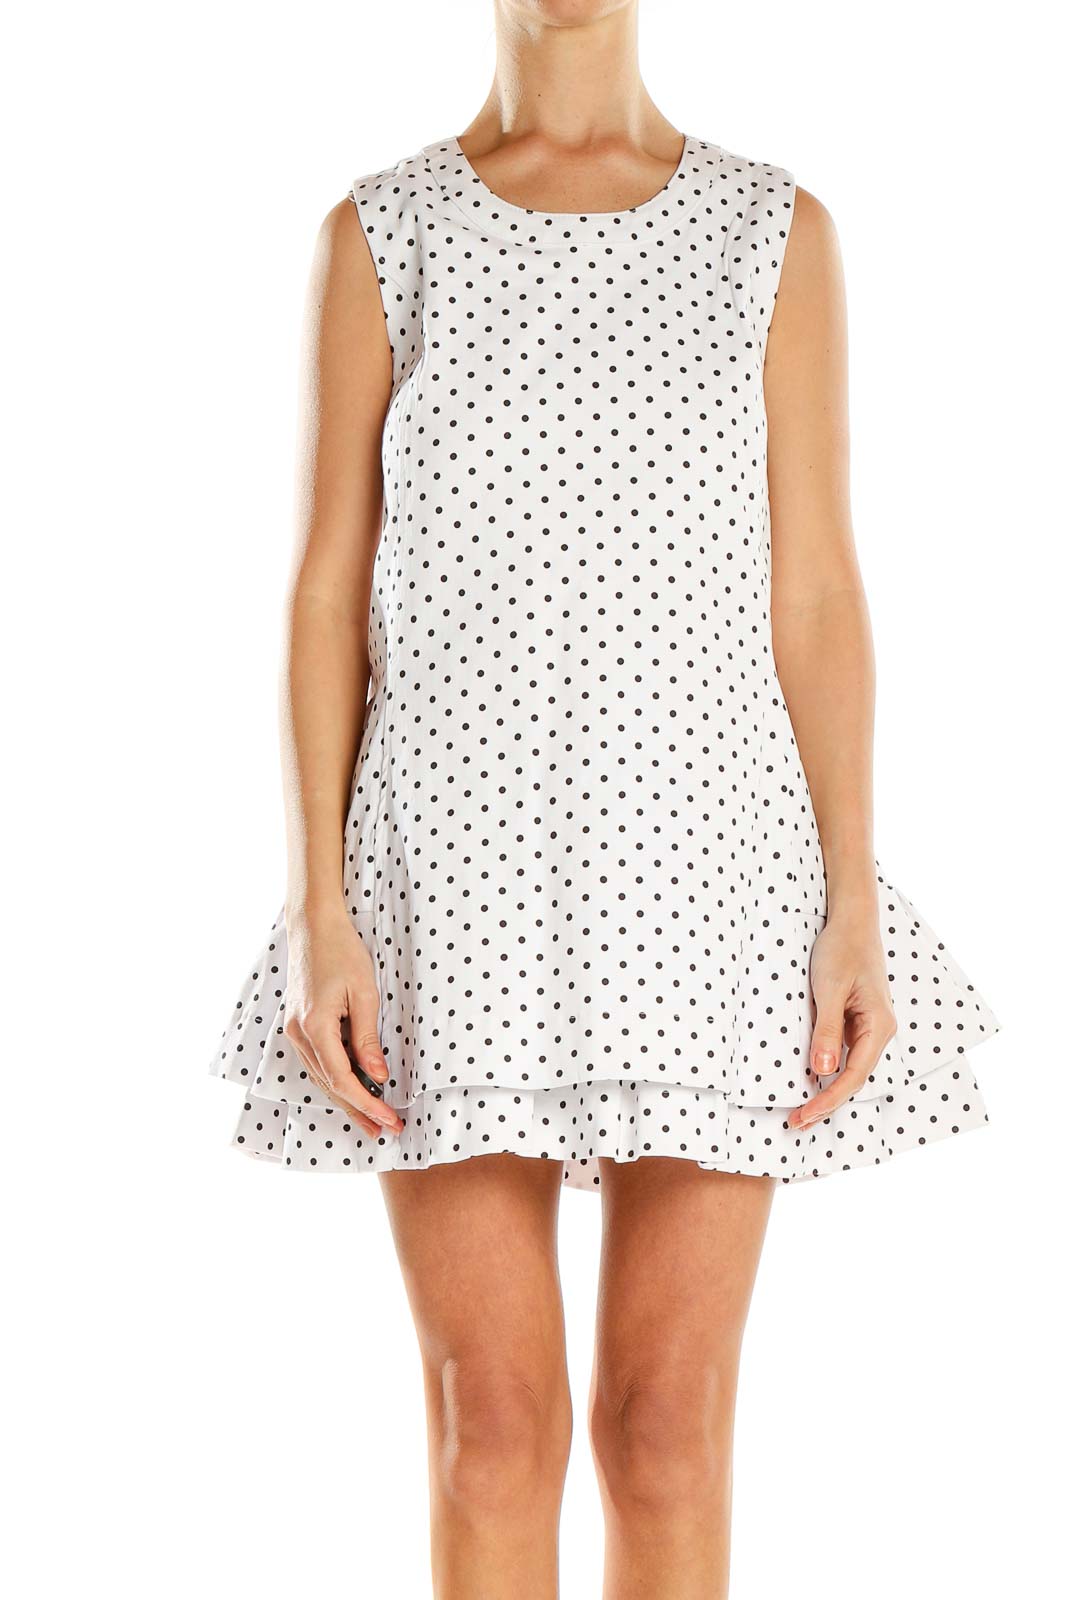 White Polka Dot Mini Fit & Flare Dress Front